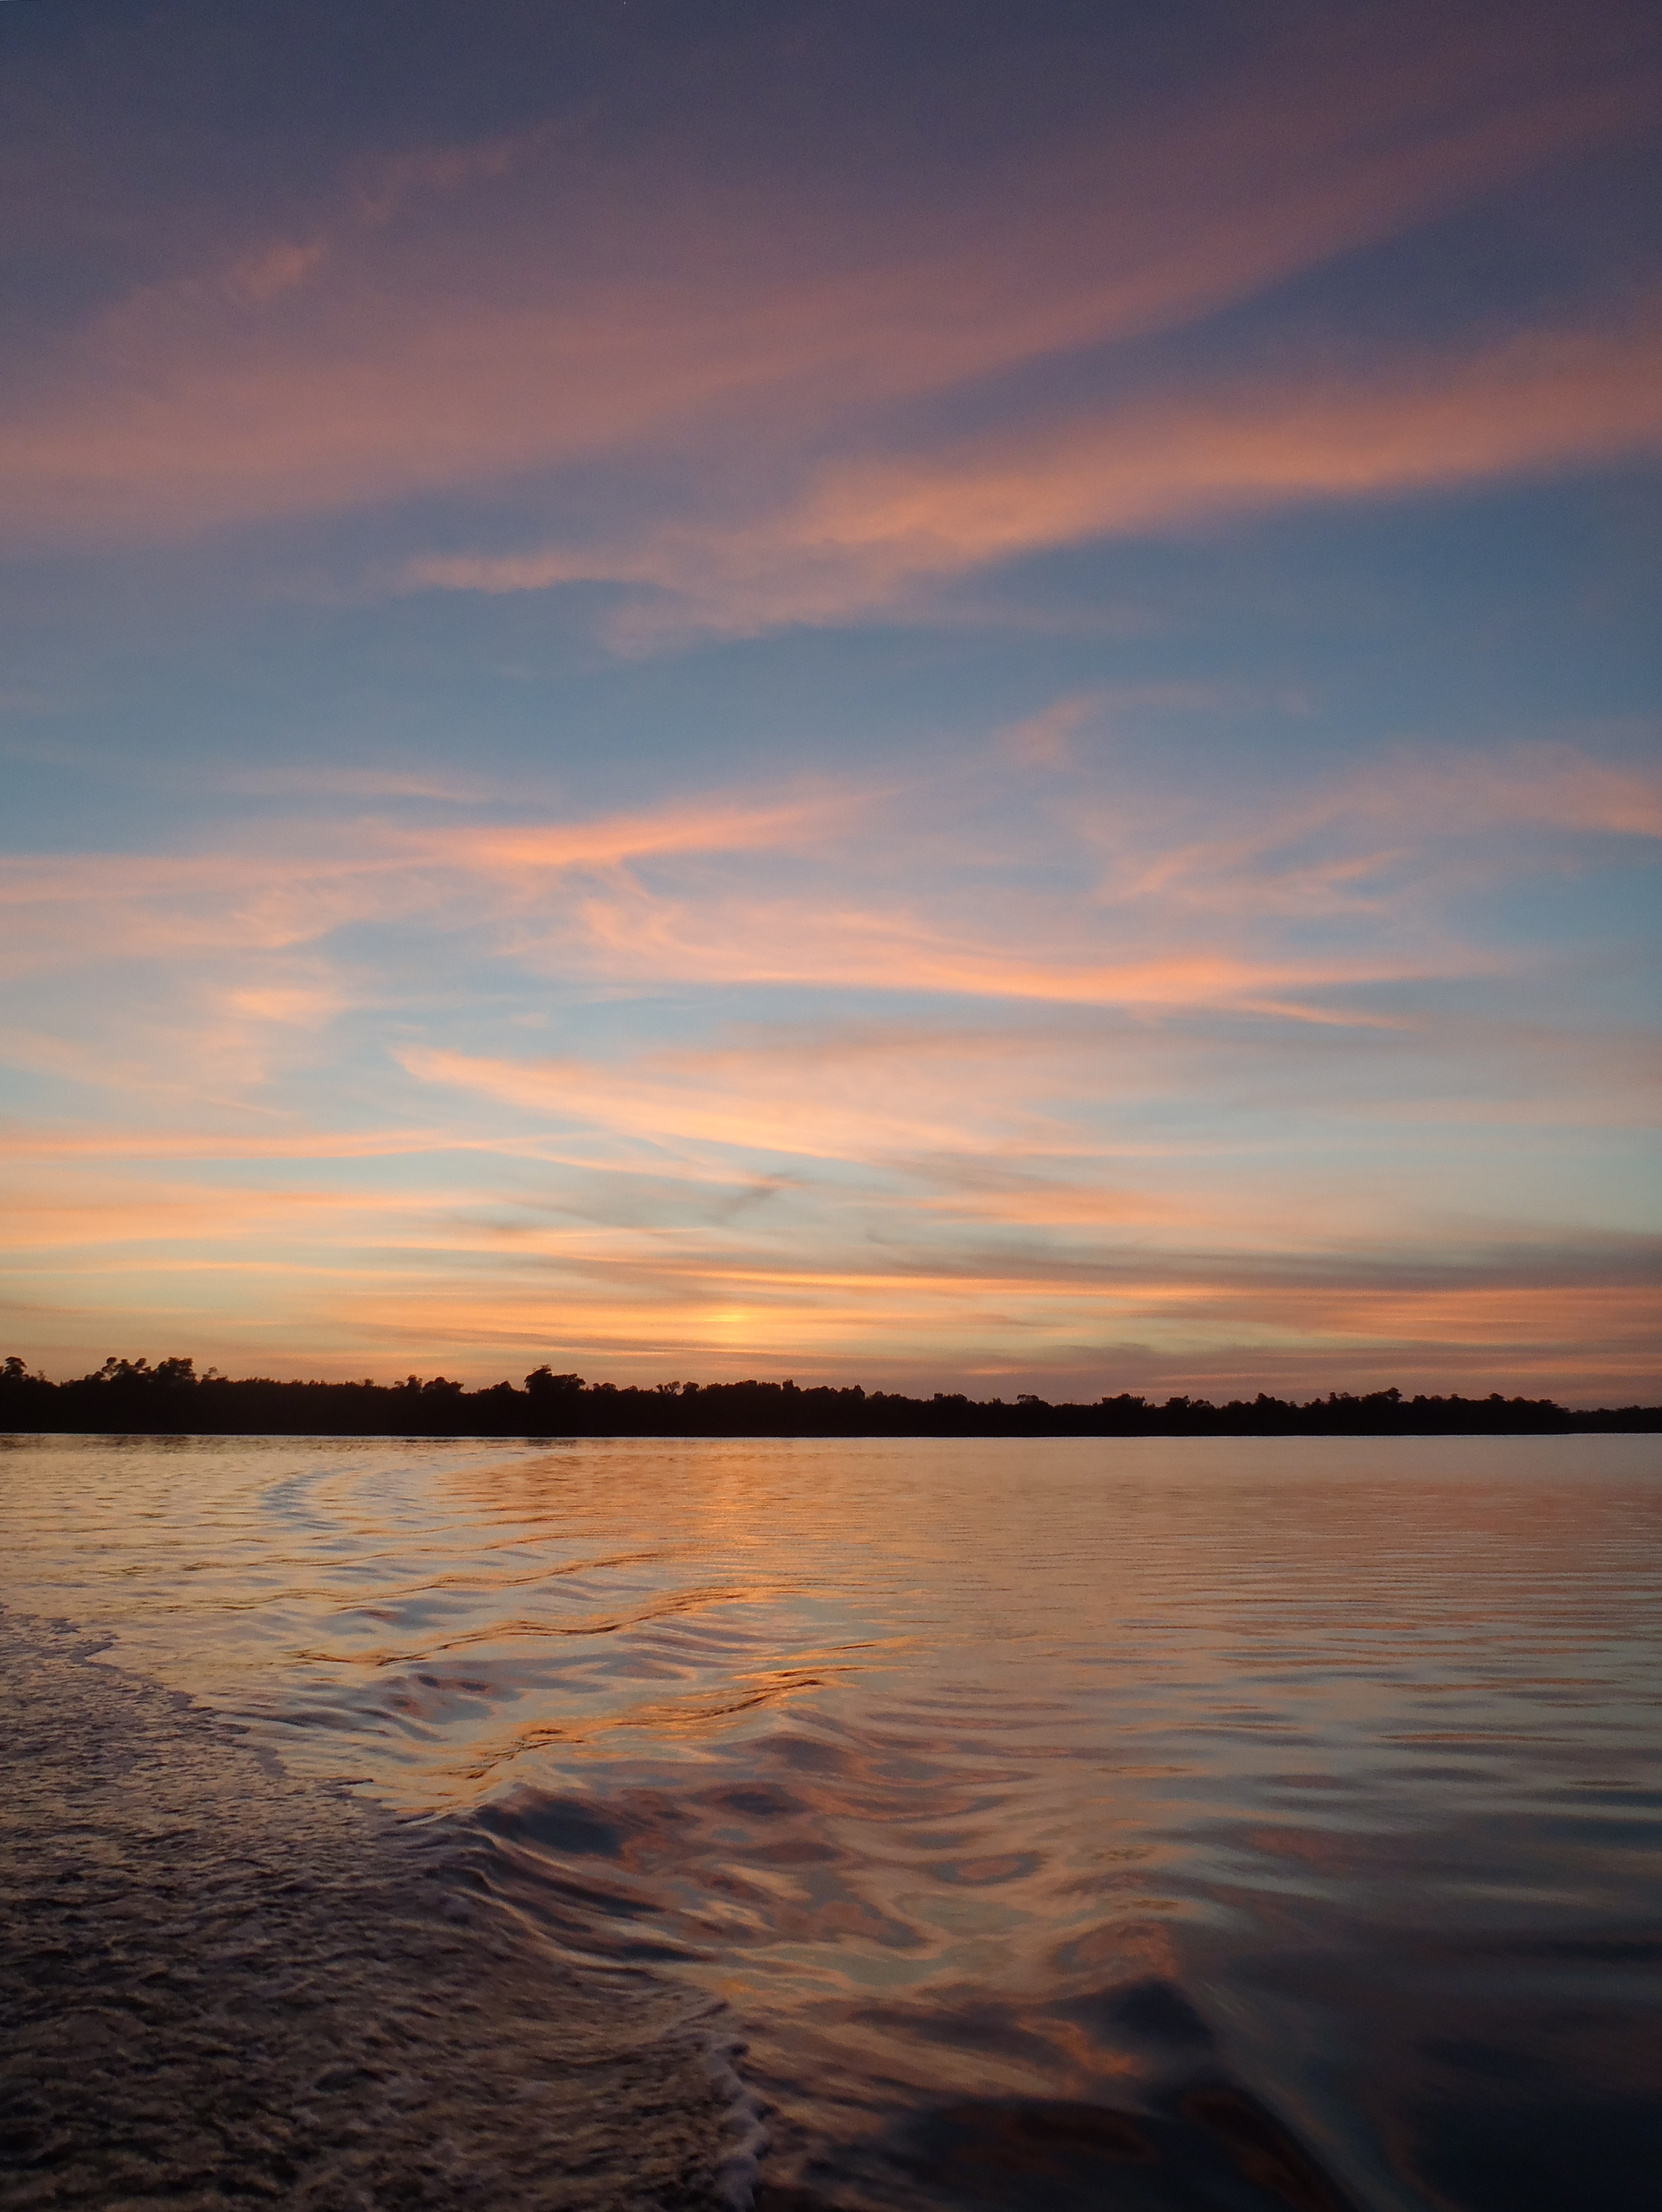 Sunset in the Shark River Estuary